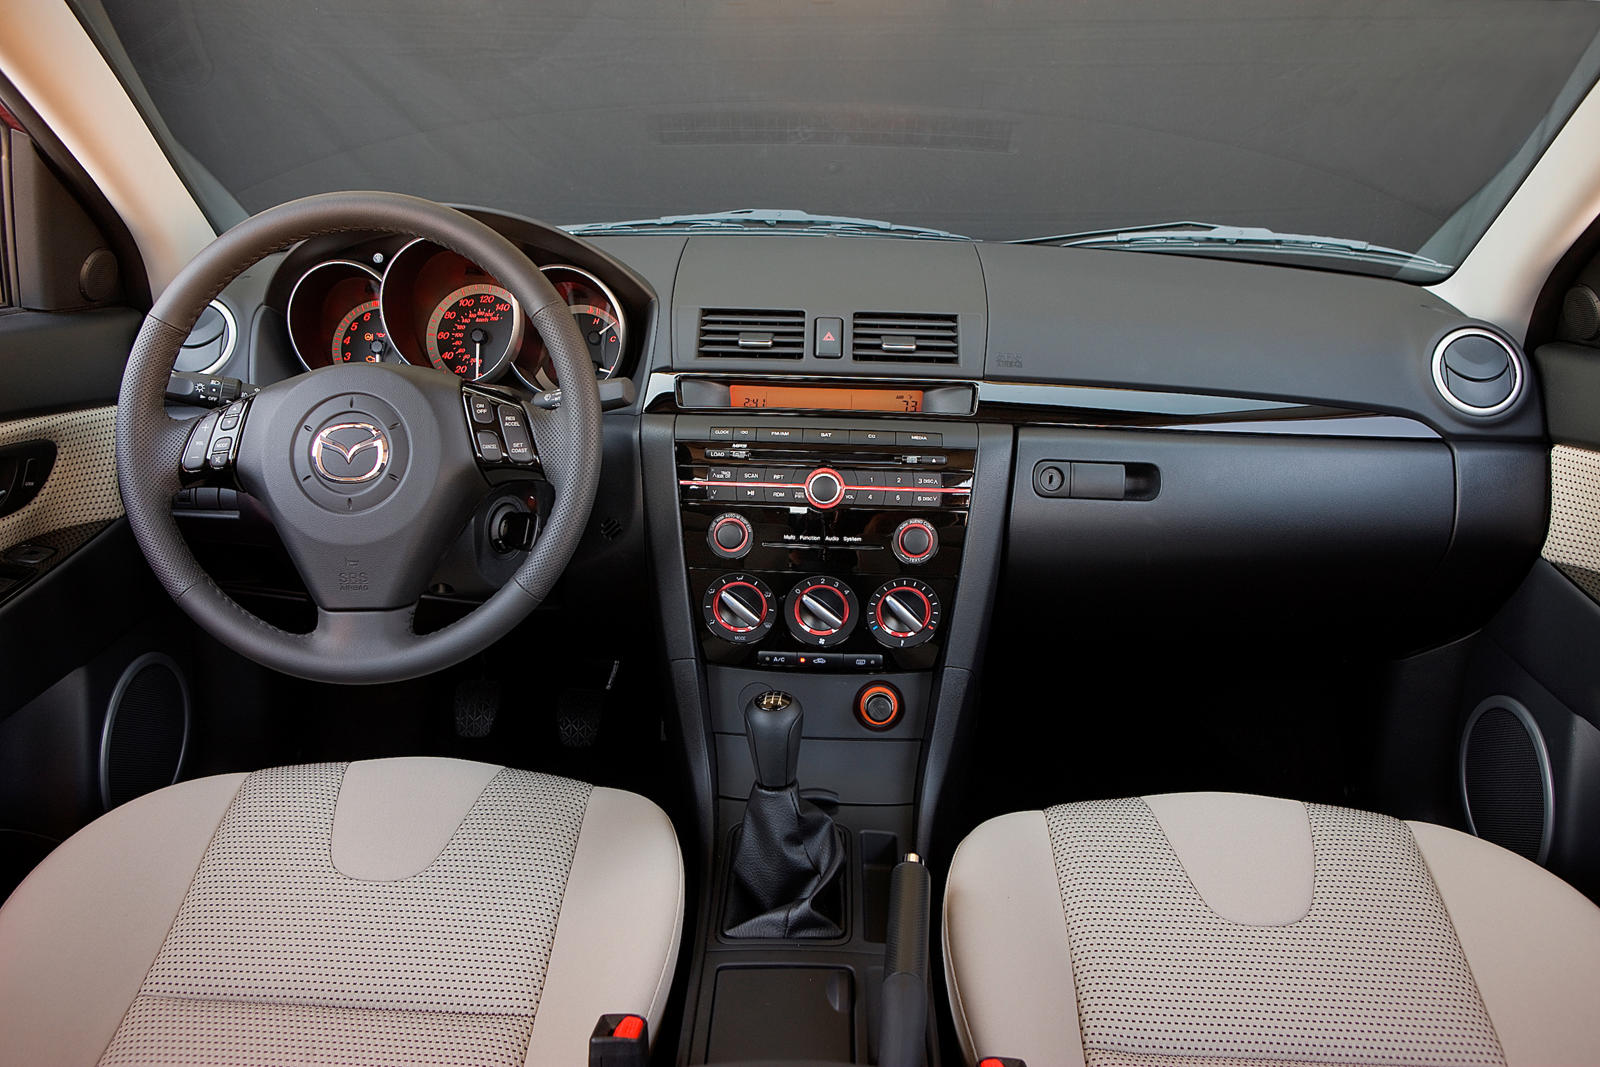 2008 Mazda 3 Sedan Interior Photos | CarBuzz